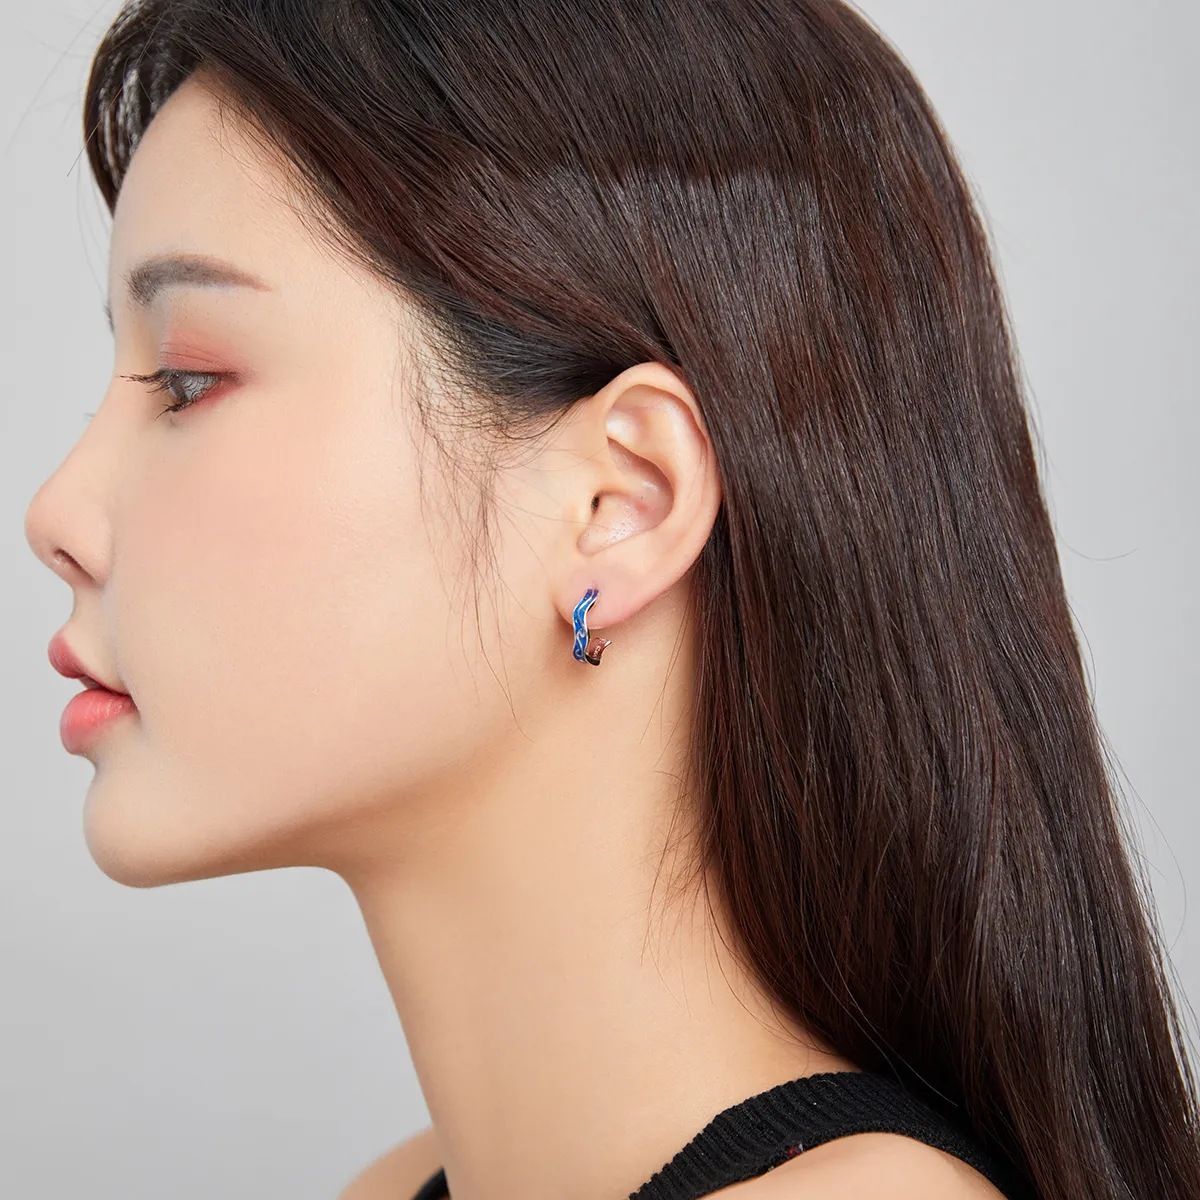 Pandora Style Silver Blue Star Pattern Stud Earrings - SCE1029